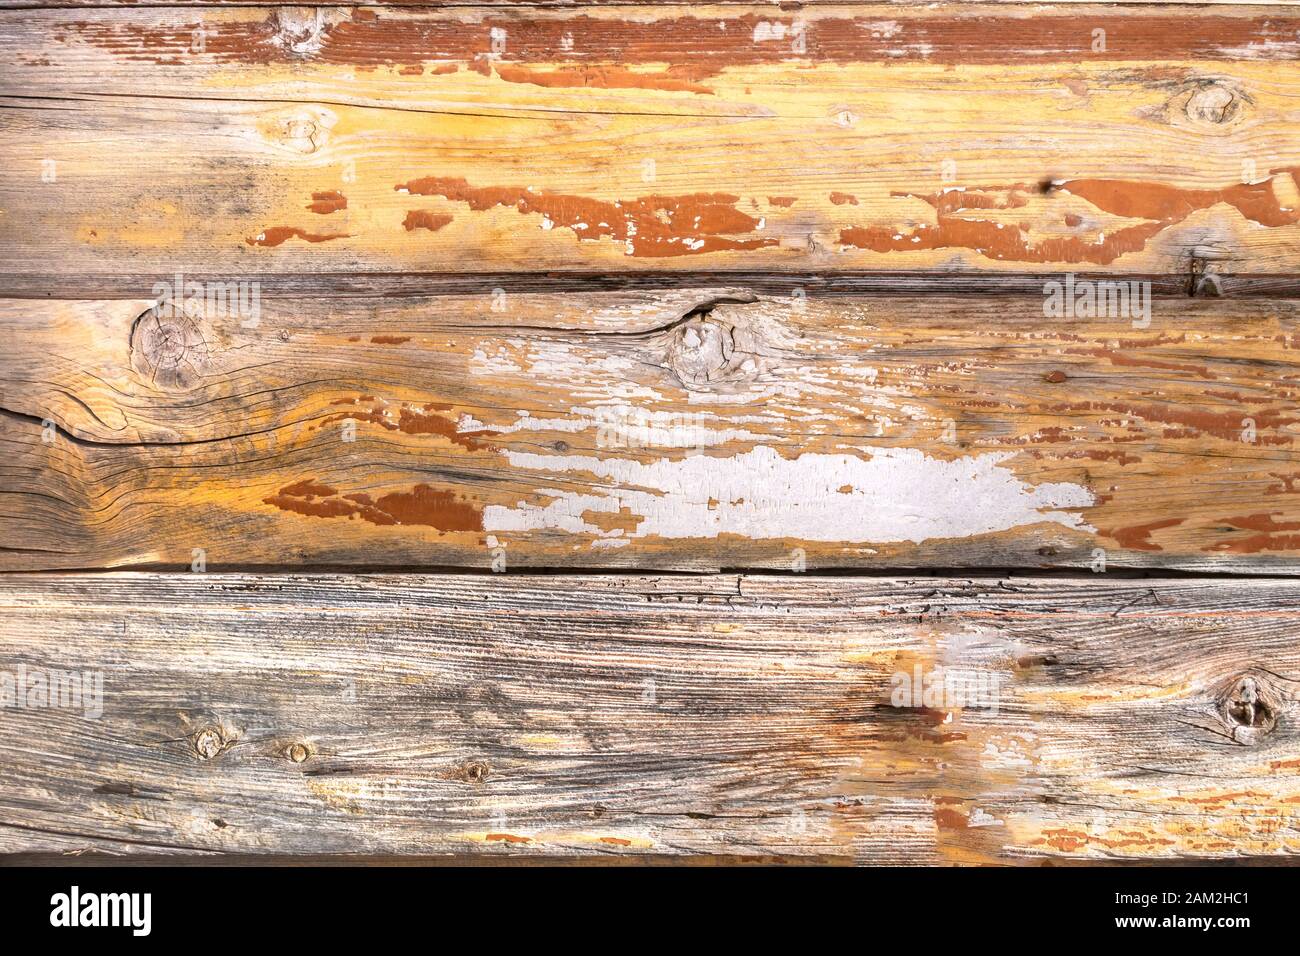 Background wood. Vintage wood background. Stock Photo